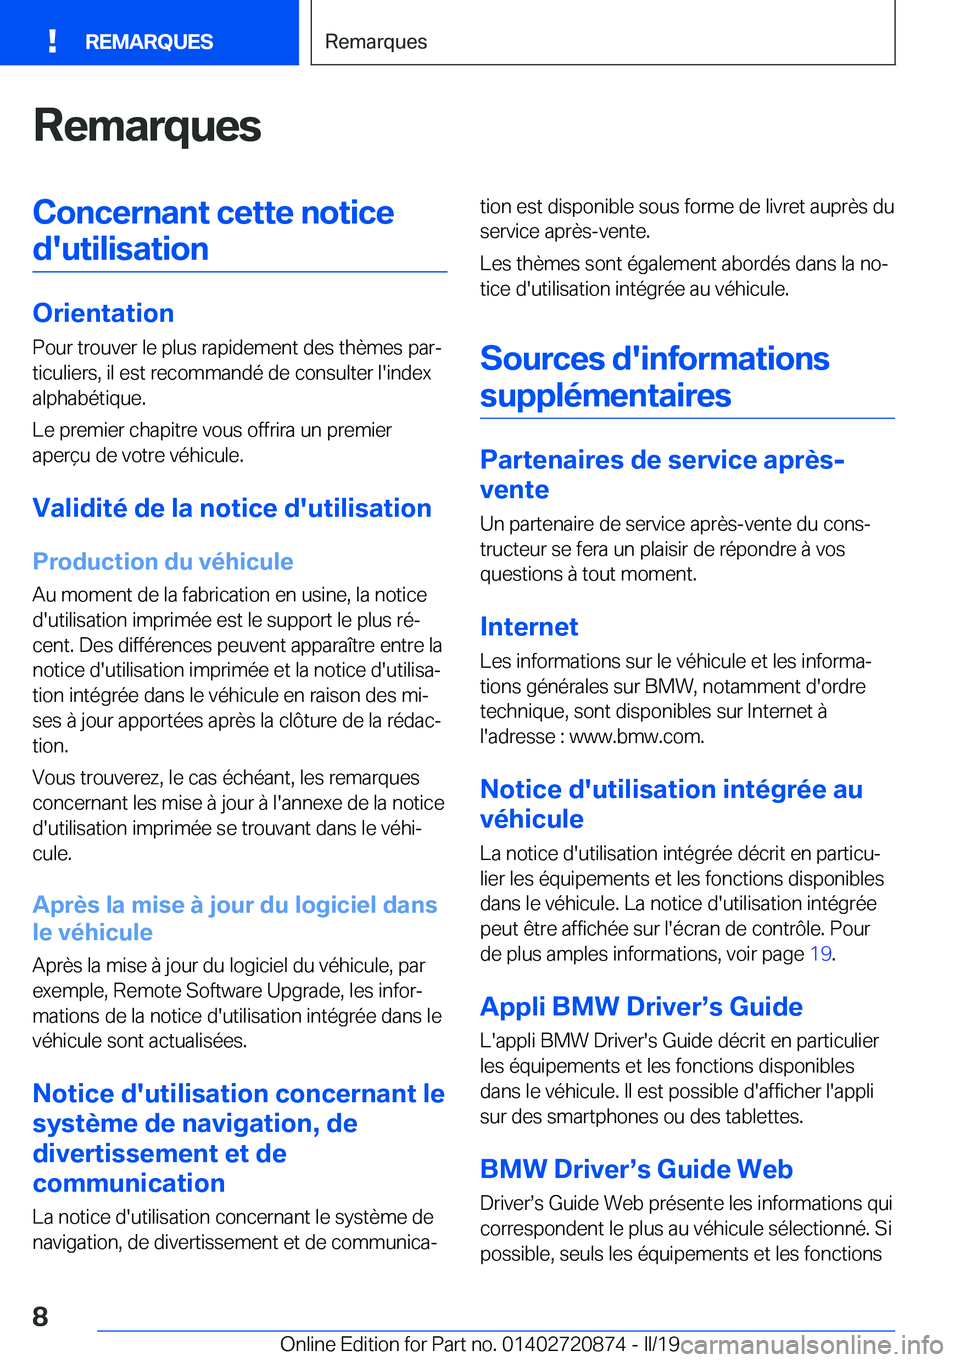 BMW X7 2019  Notices Demploi (in French) �R�e�m�a�r�q�u�e�s�C�o�n�c�e�r�n�a�n�t��c�e�t�t�e��n�o�t�i�c�e�d�'�u�t�i�l�i�s�a�t�i�o�n
�O�r�i�e�n�t�a�t�i�o�n �P�o�u�r��t�r�o�u�v�e�r��l�e��p�l�u�s��r�a�p�i�d�e�m�e�n�t��d�e�s��t�h�è�m�